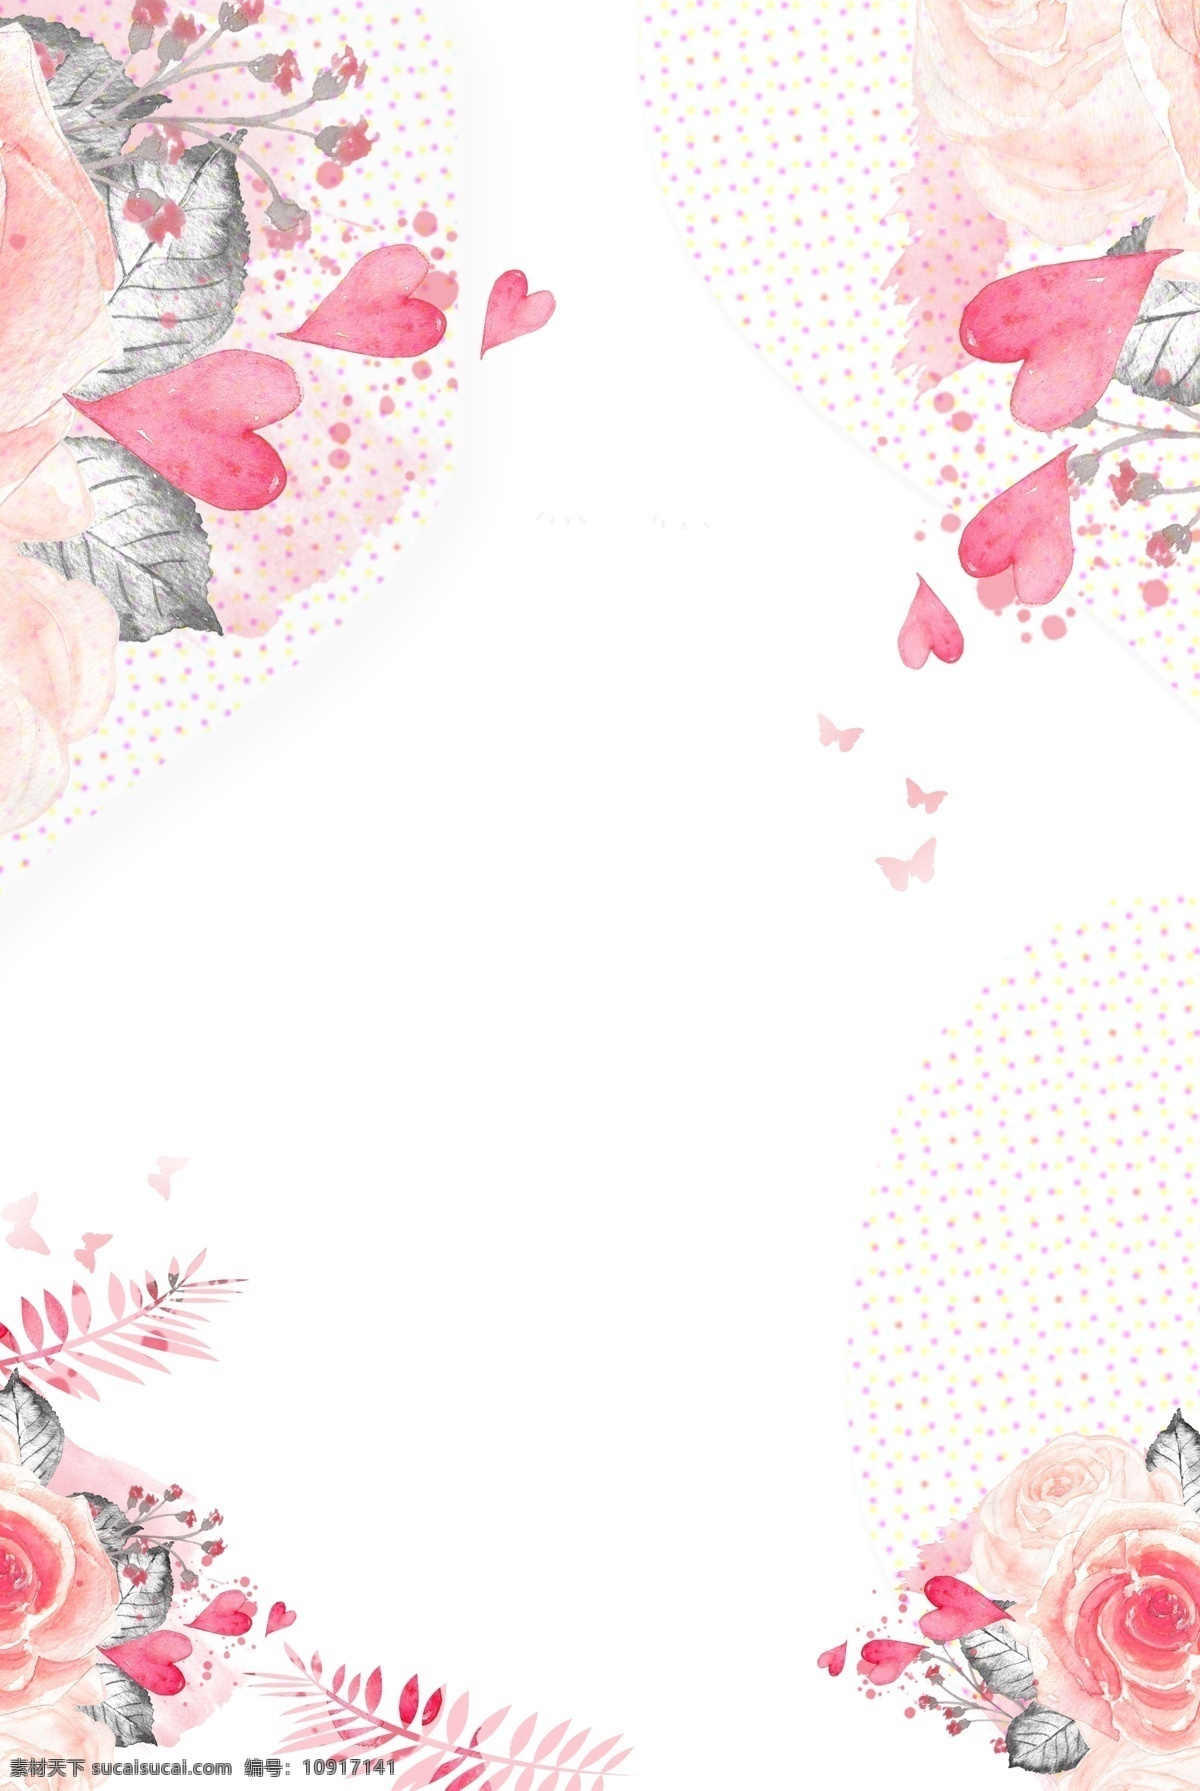 粉色 温馨 花卉 母亲节 海报 背景 爱心 文艺 清新 卡通 手绘 质感 纹理